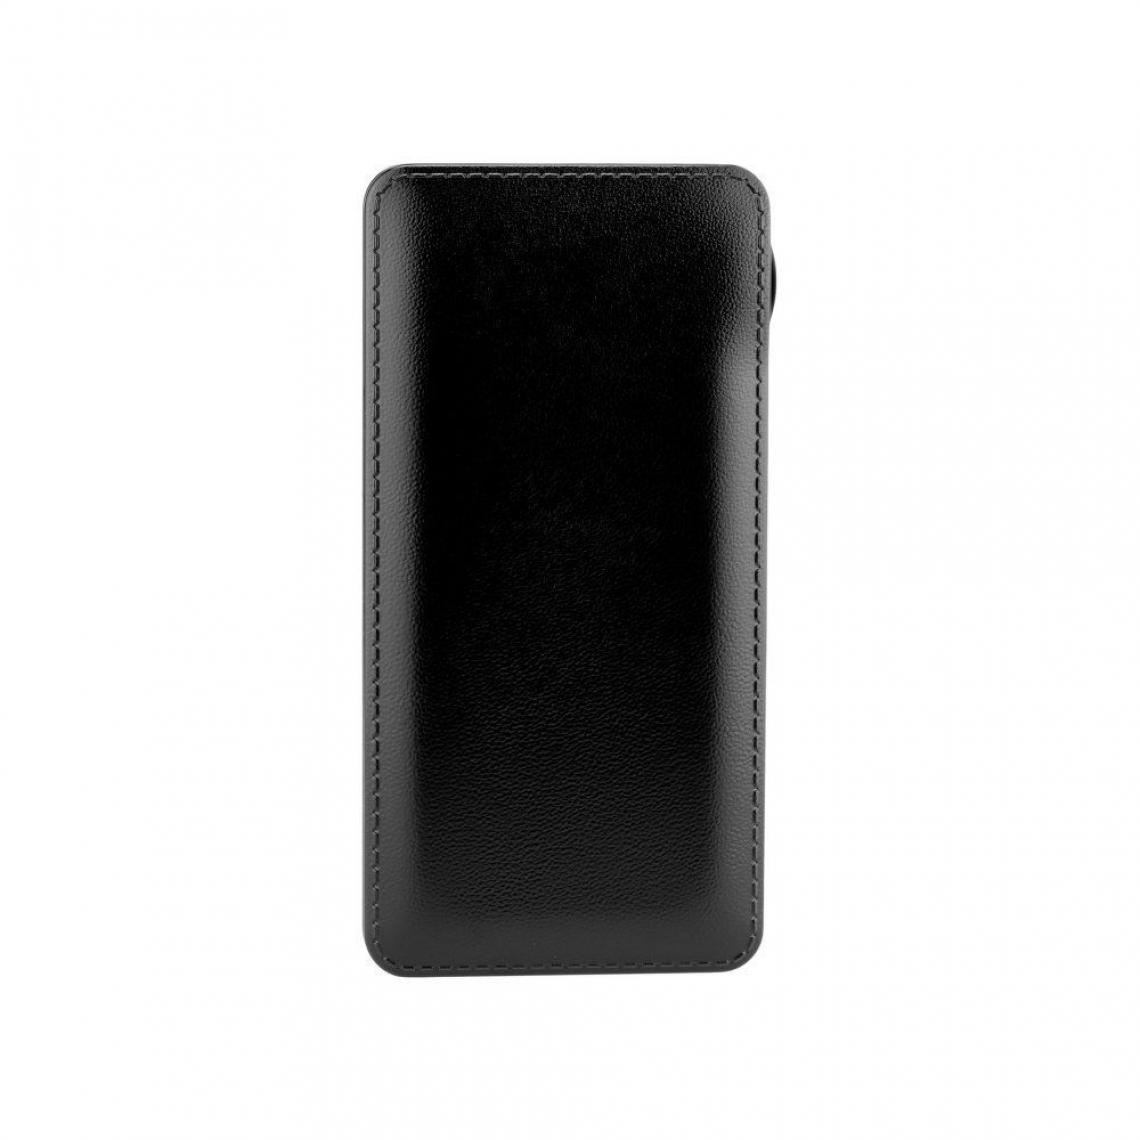 Ozzzo - Chargeur batterie externe 10000mAh powerbank ozzzo noir pour Teclast M30 - Autres accessoires smartphone